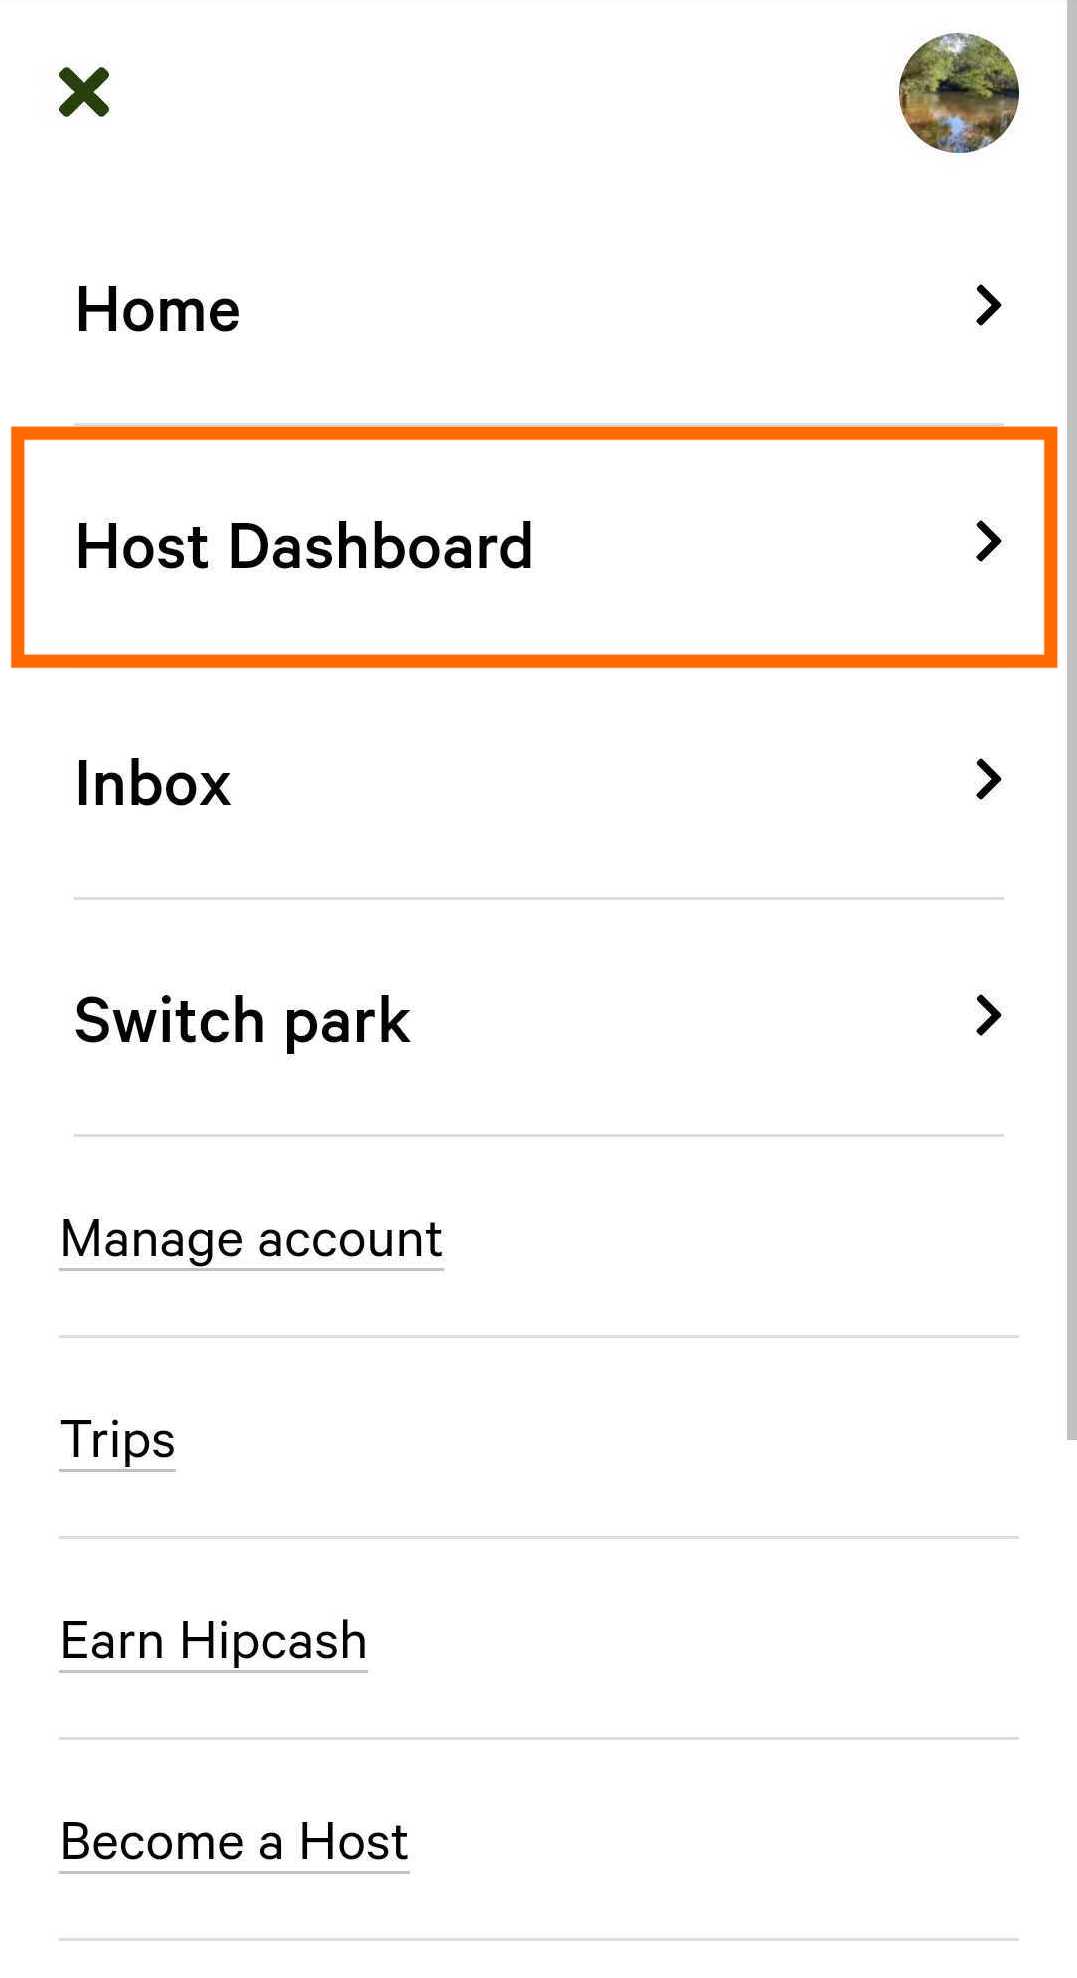 Mobile_Host_Dashboard.jpg